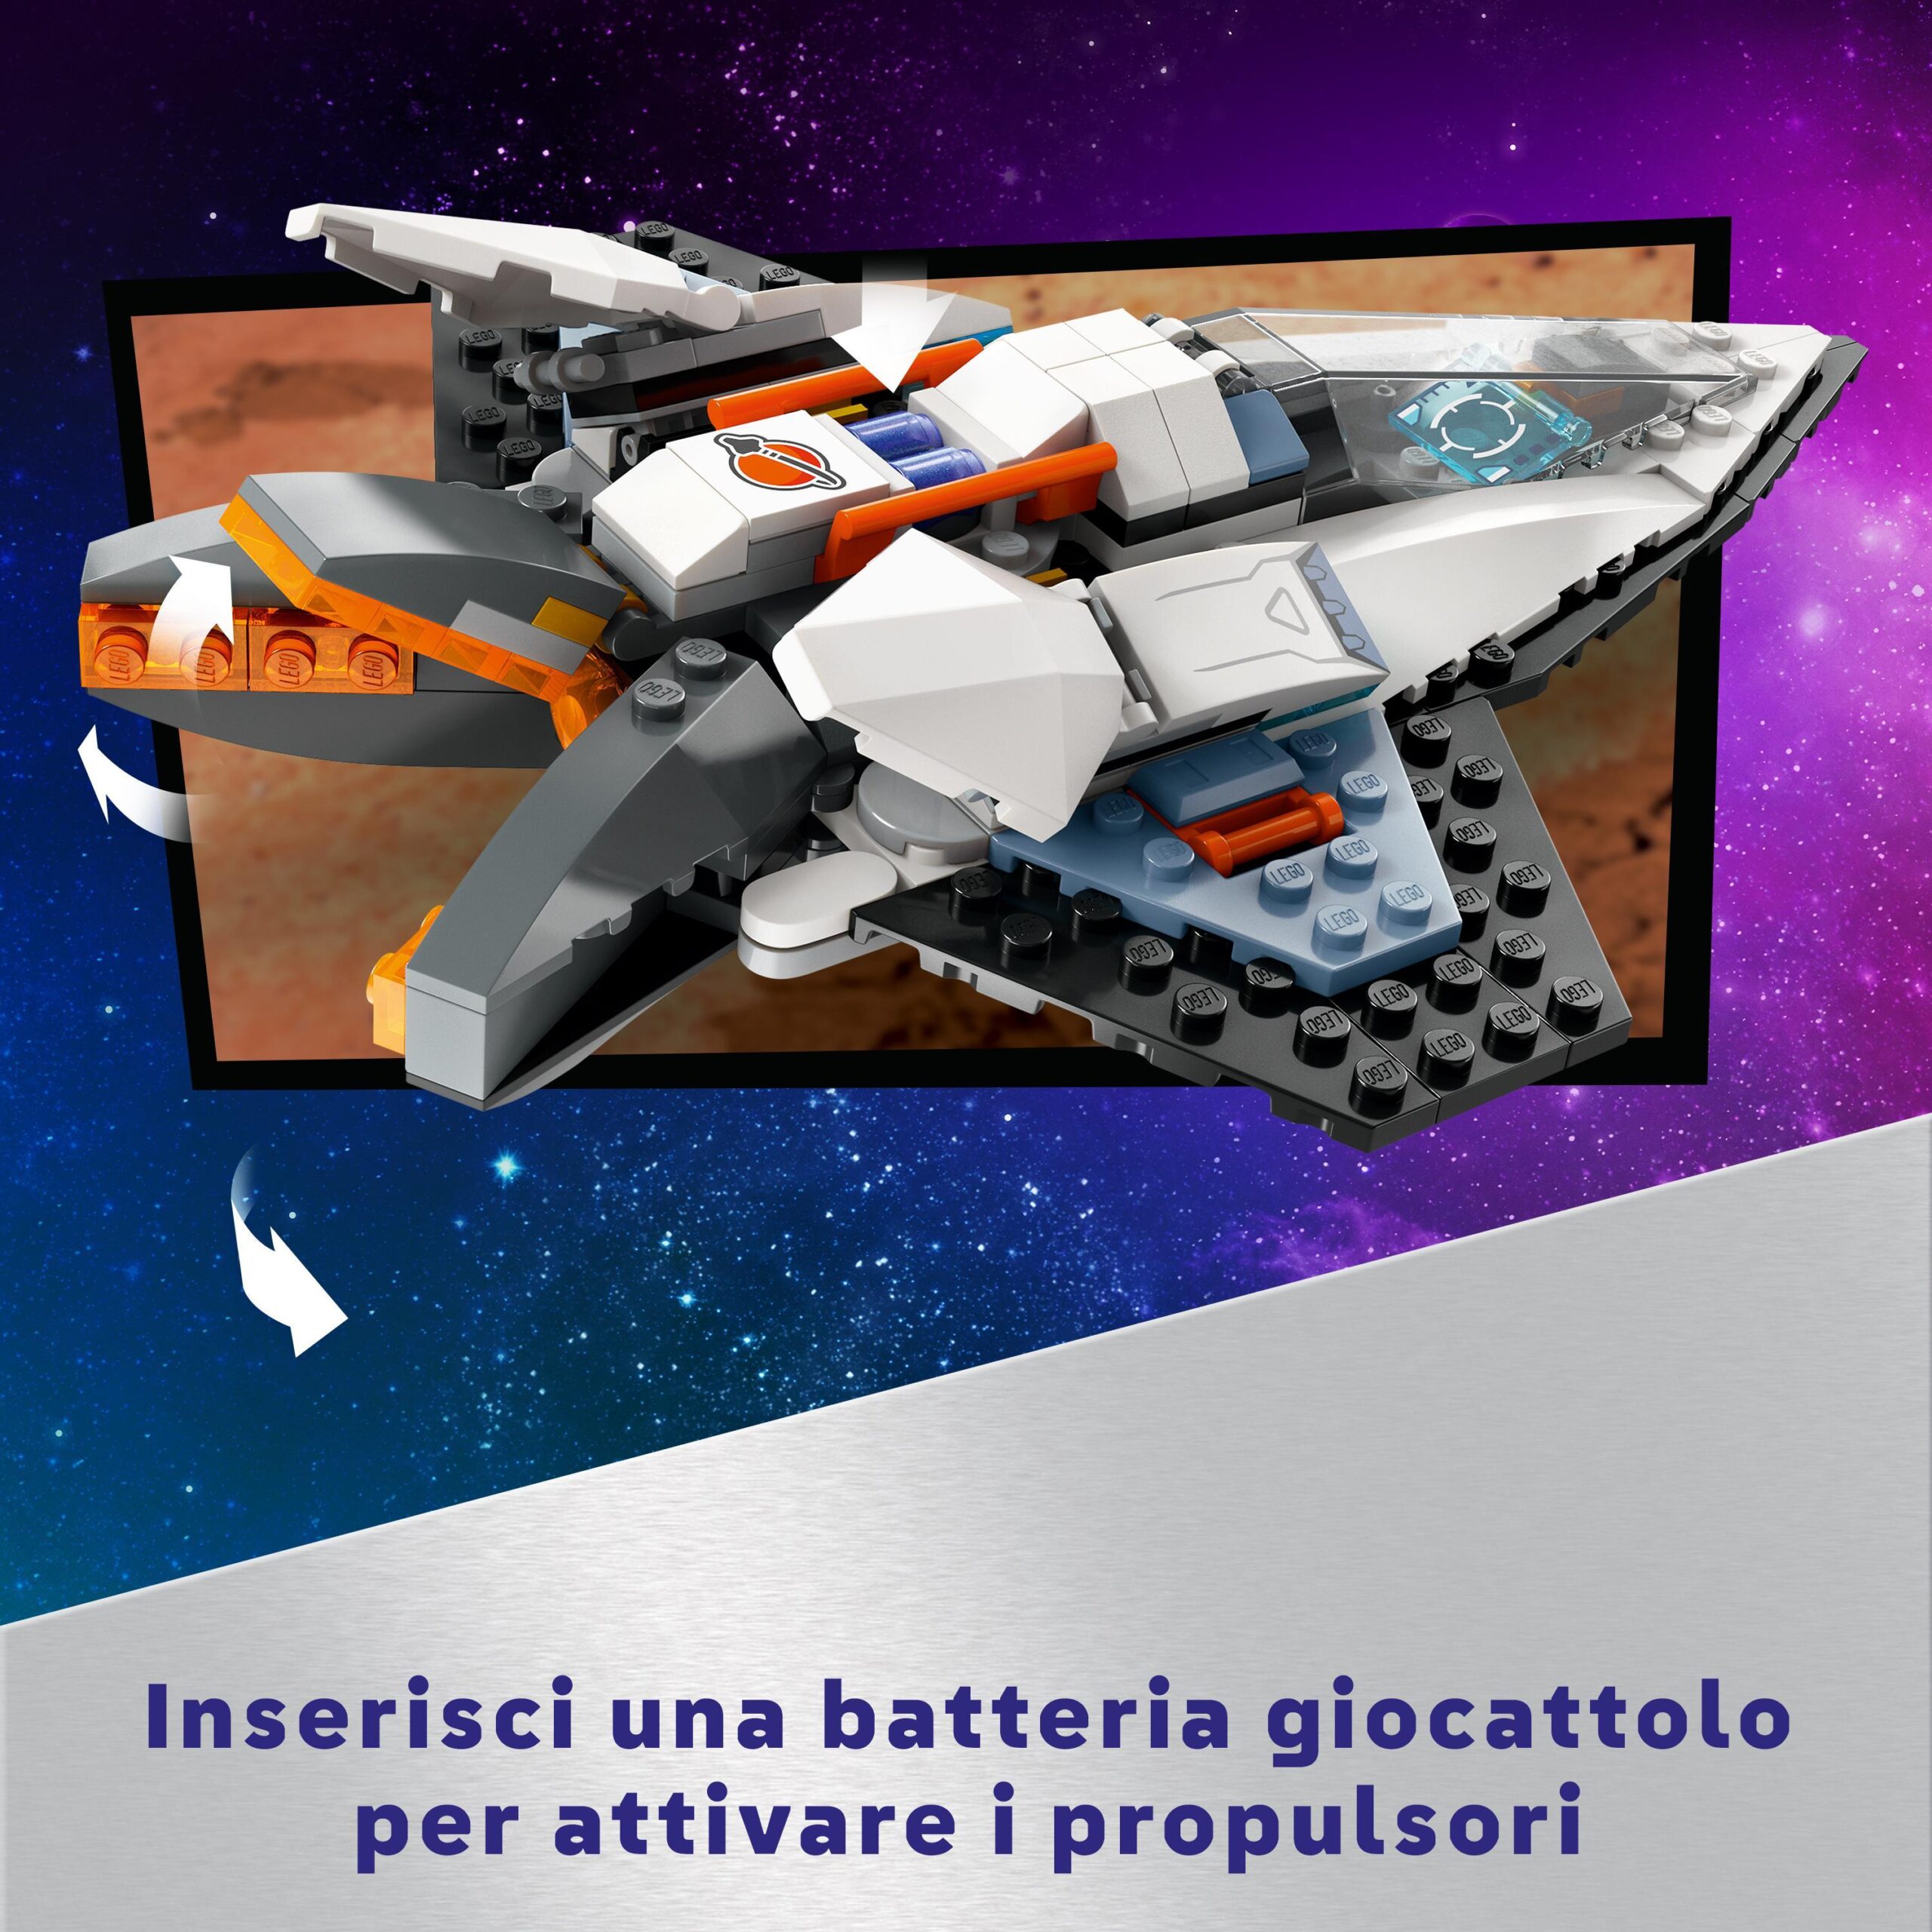 Lego city 60430 astronave interstellare, giocattolo, gioco spaziale per bambini 6+ anni con navicella, minifigure e drone robot - LEGO CITY